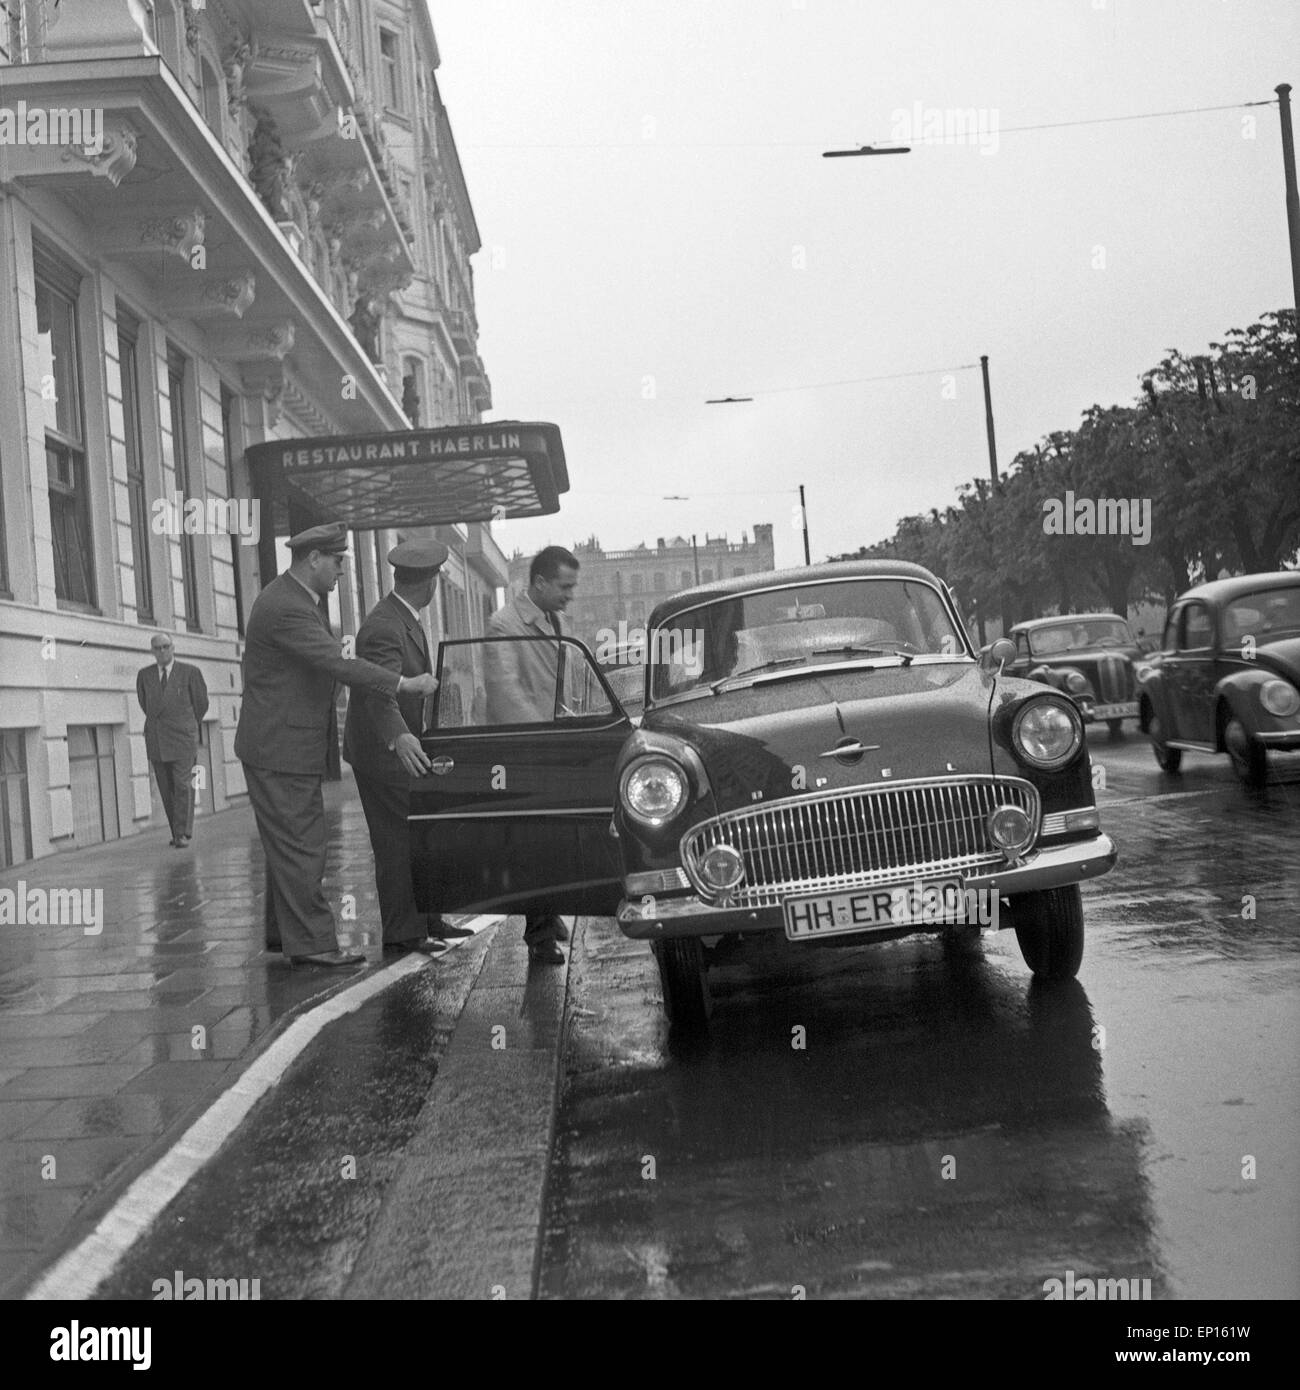 Ein Chauffeur holt seine Fahrgäste vor dem Restaurant Haerlin in Hamburg ab, Deutschland 1950er Jahre. A chauffeur picking up hi Stock Photo